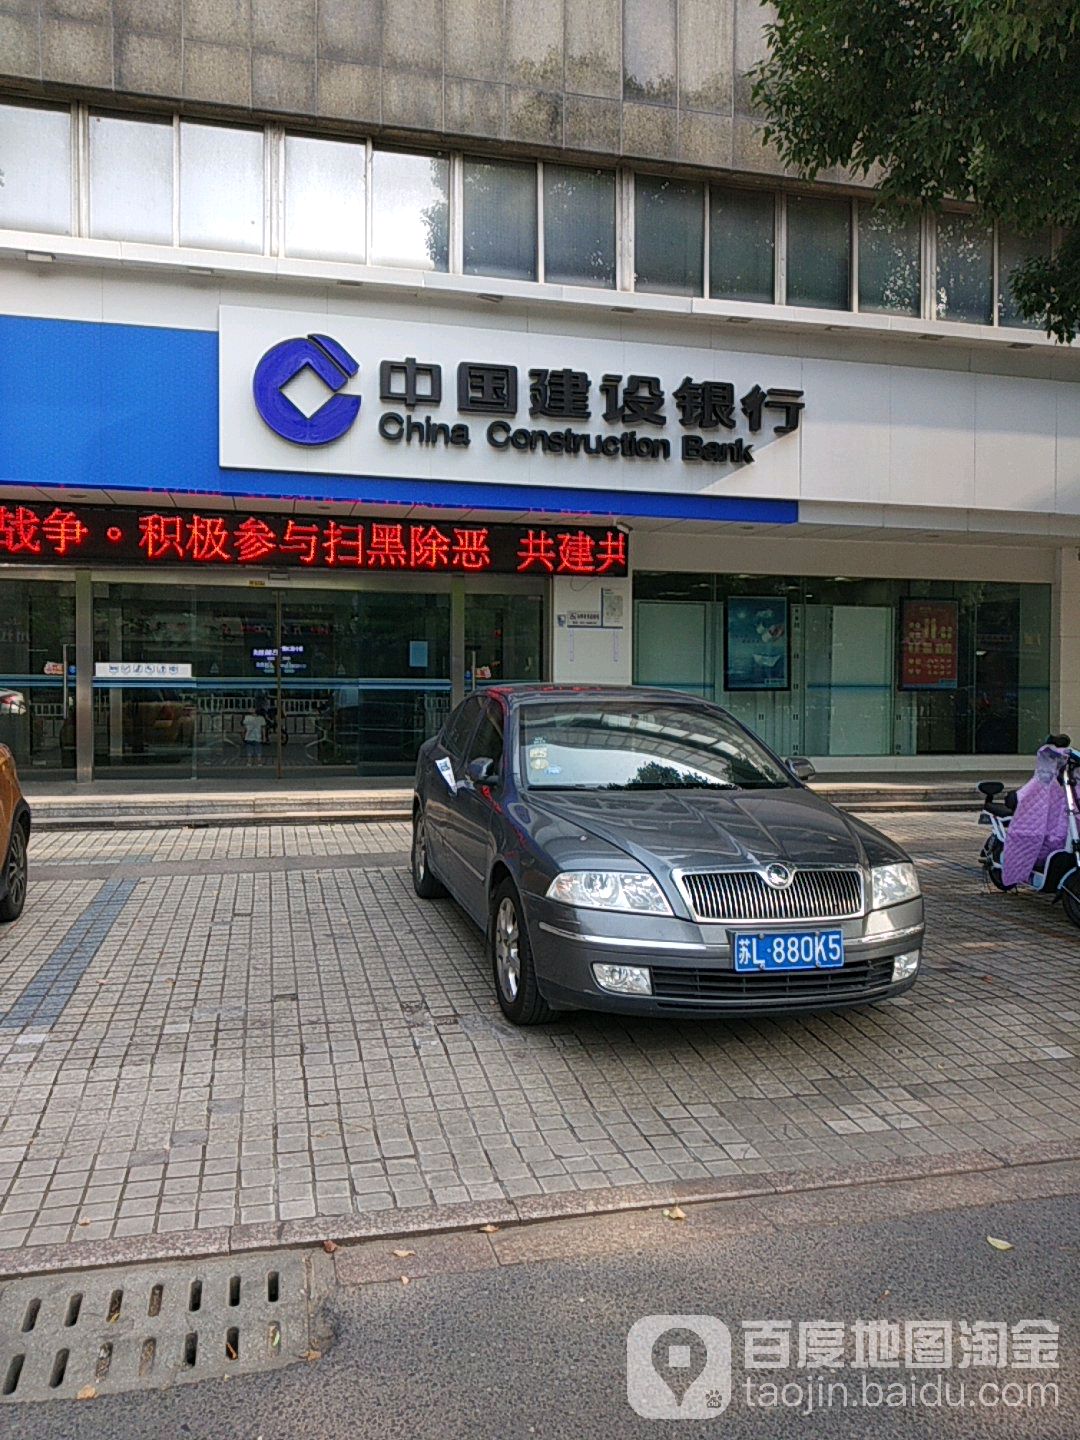 中國建設銀行(丹陽經濟技術開發區支行)